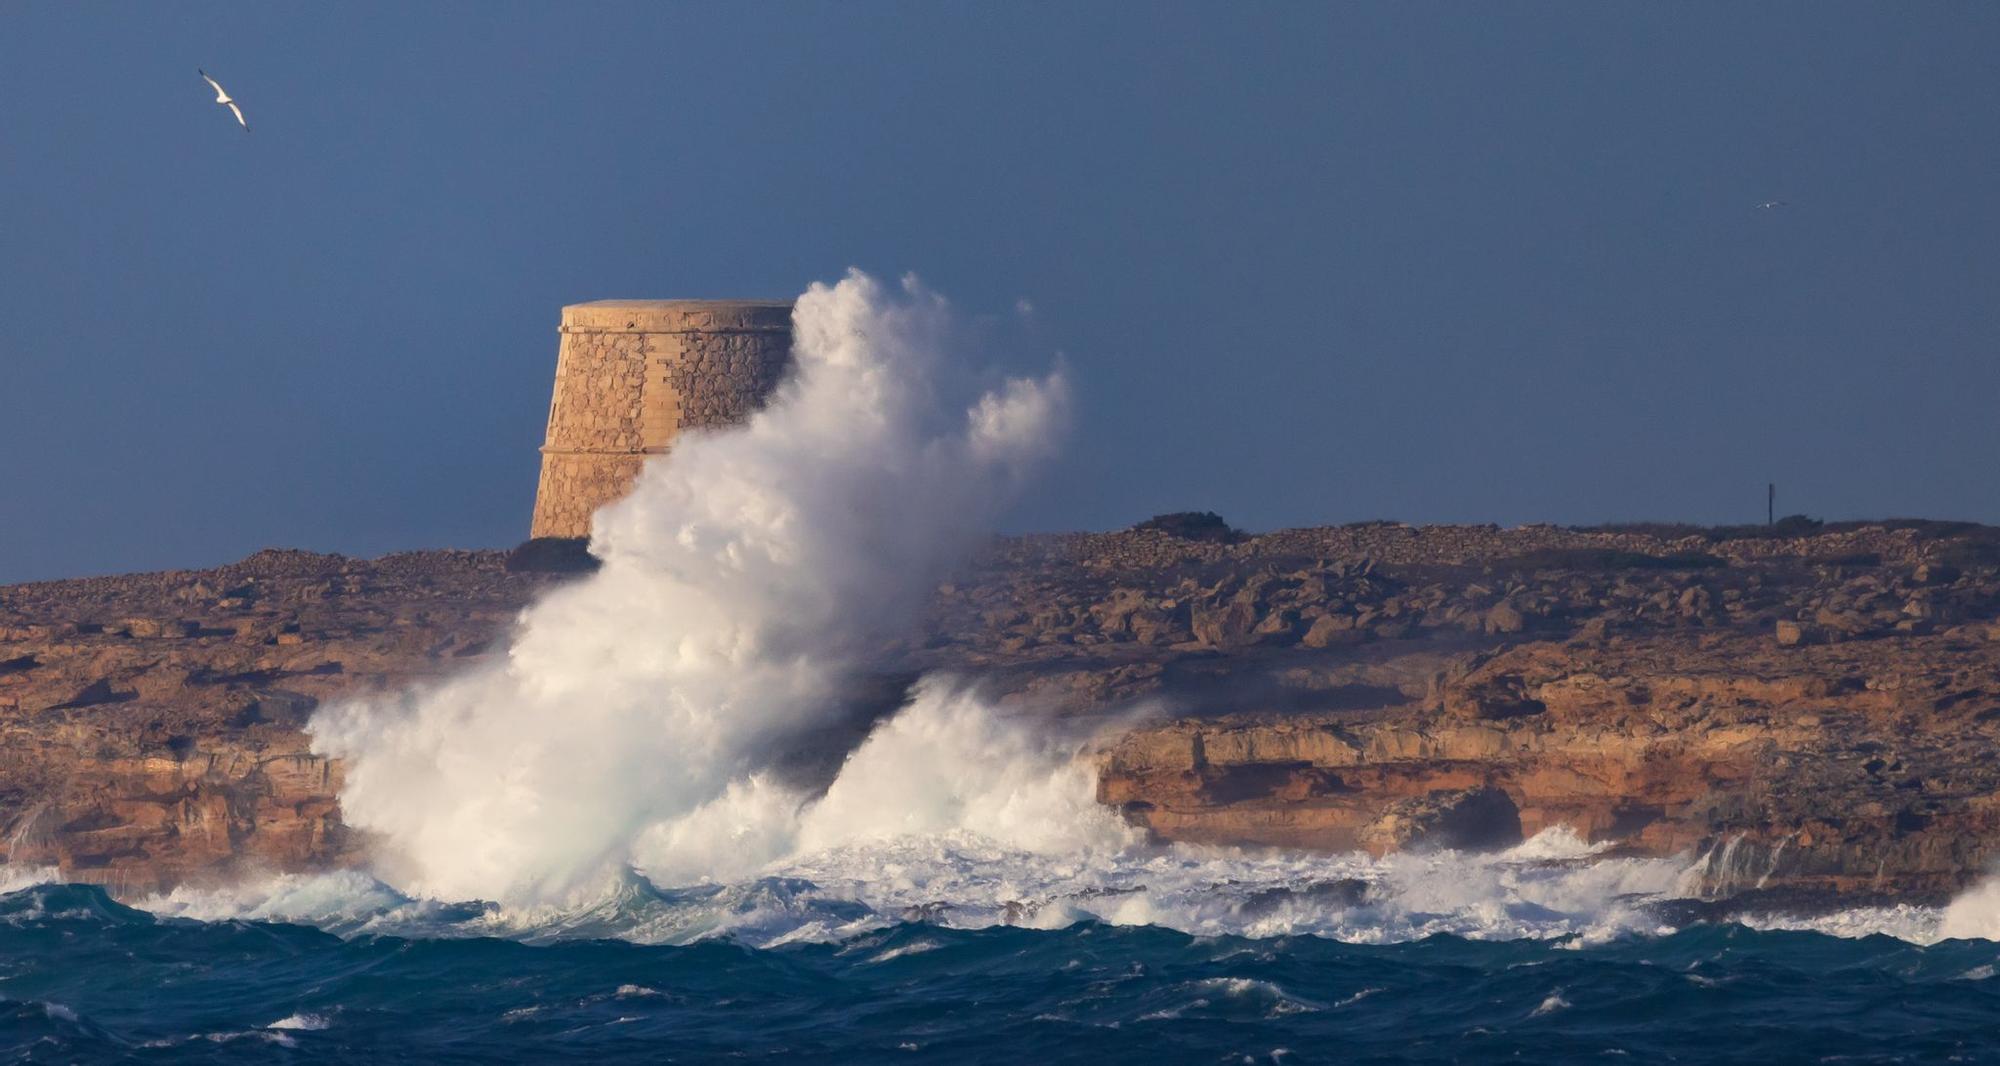 El temporal azota Formentera, en imágenes